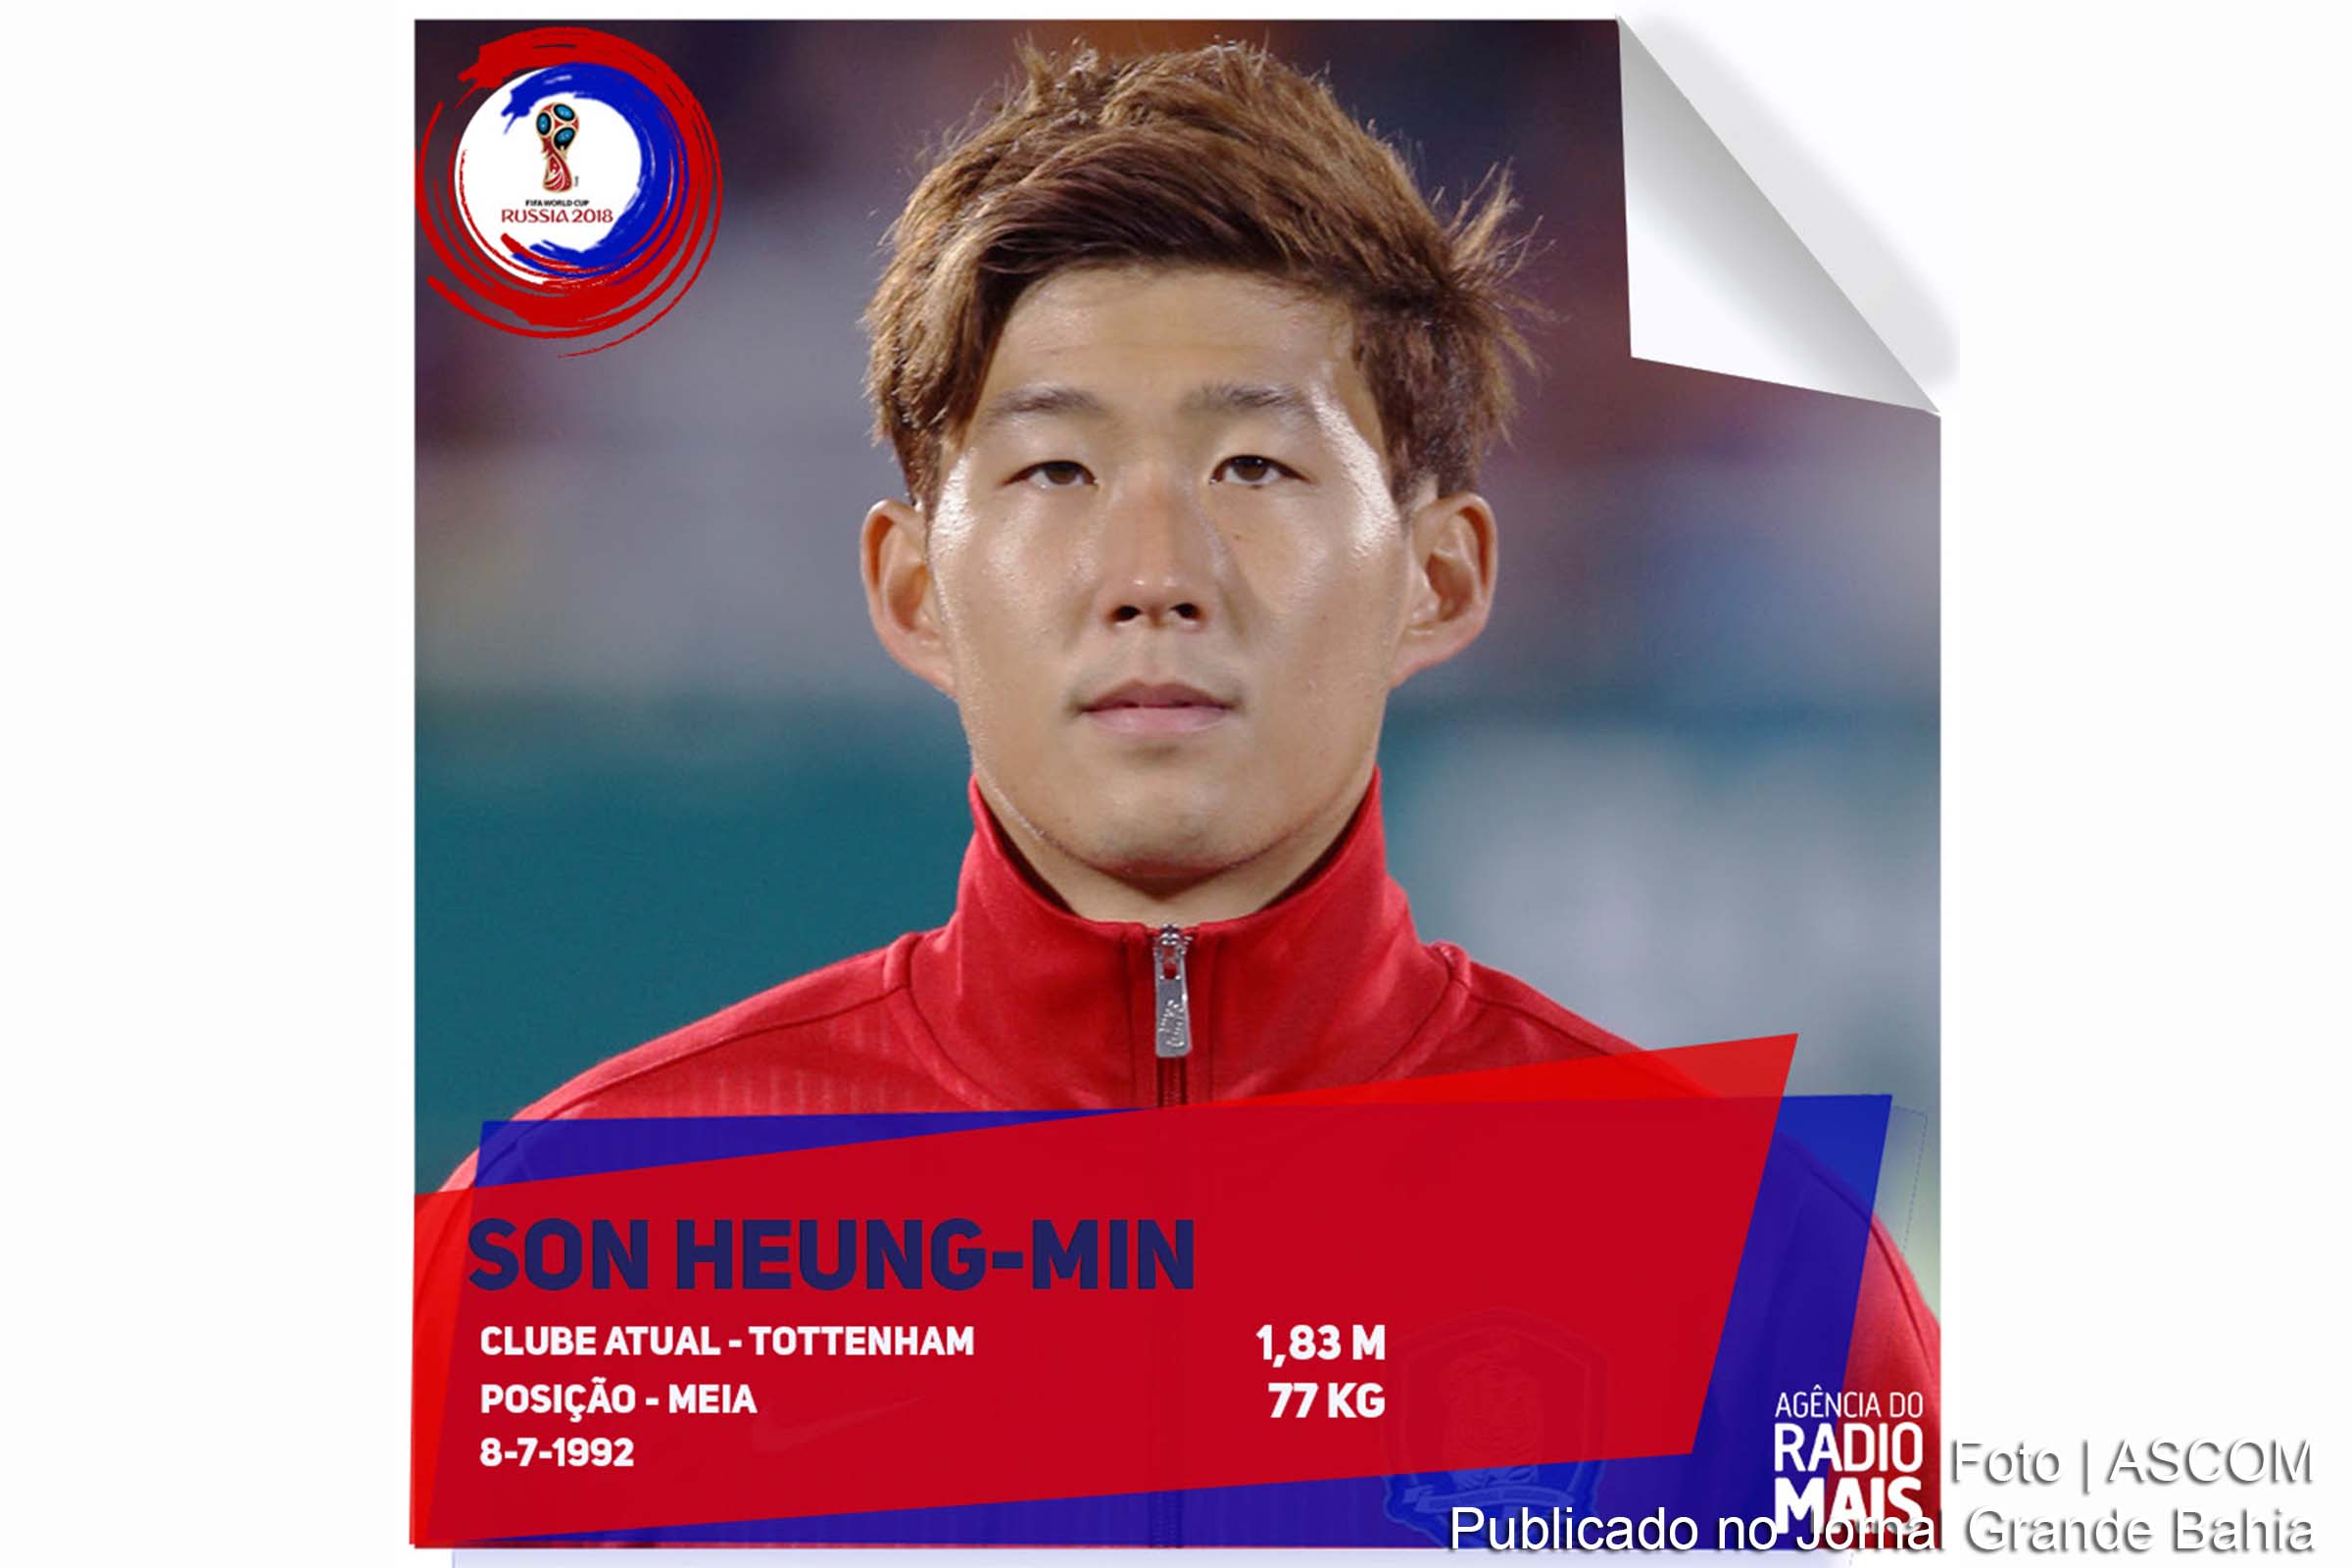 Son Heung-Min joga pelo Tottenham e foi escalado como jogador da Seleção de Futebol da Coreia do Sul.